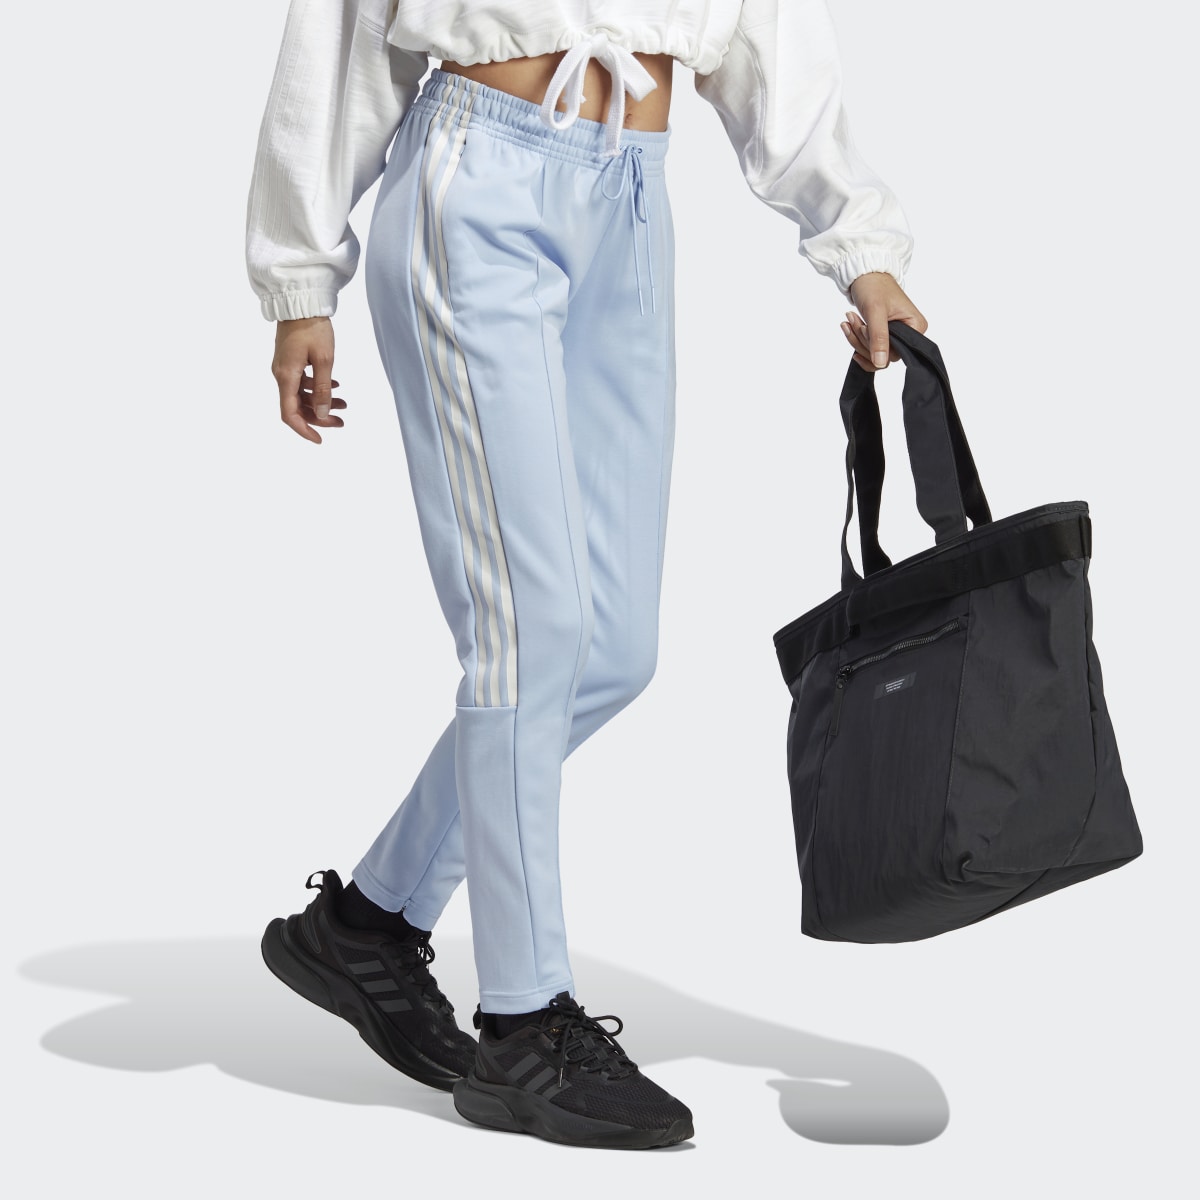 Adidas Tiro Suit Up Lifestyle Track Pant. 4